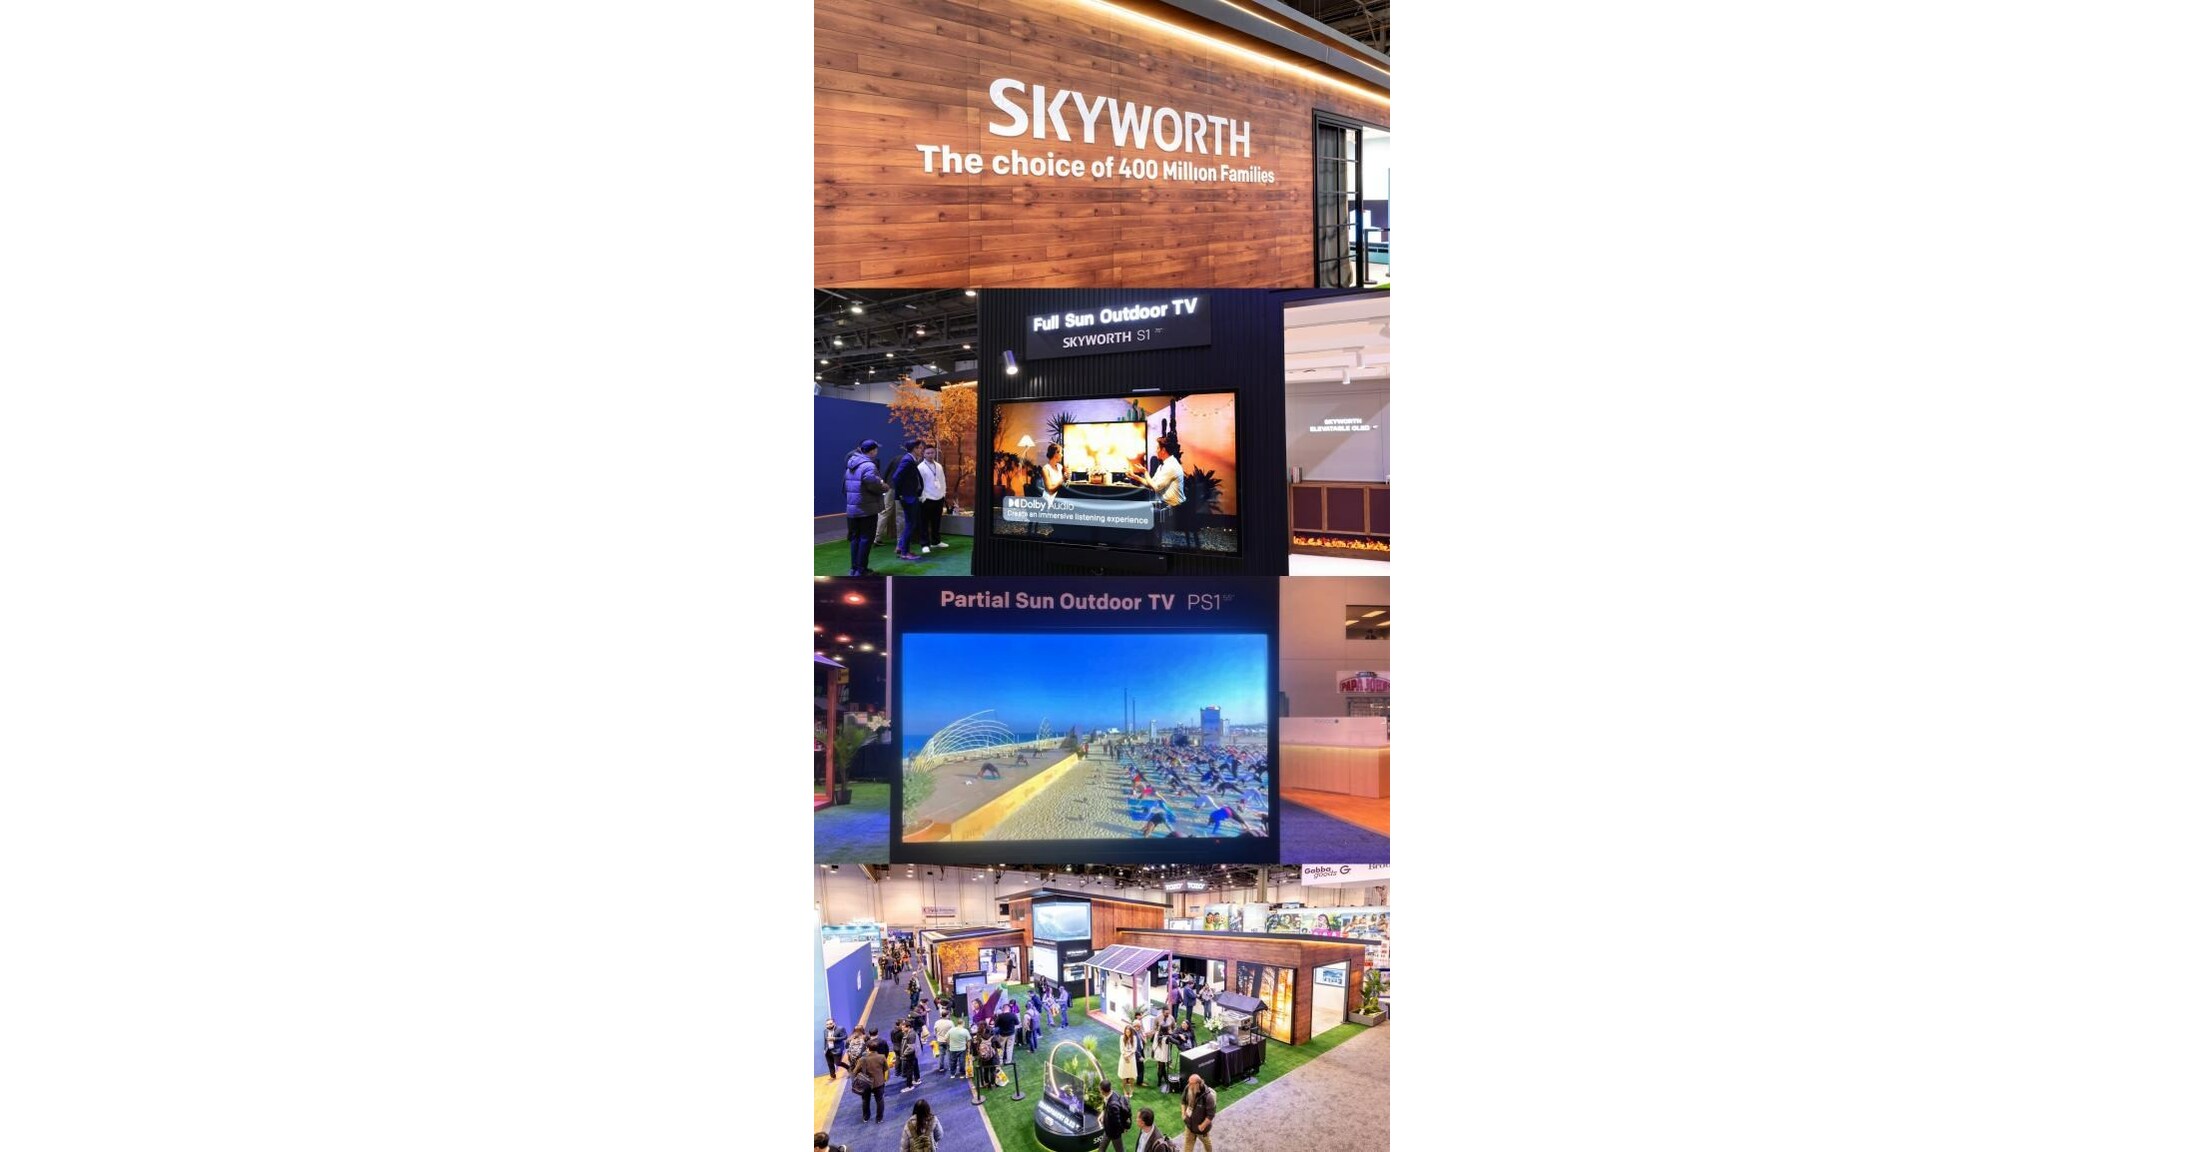 Jako preferowany wybór 400 milionów rodzin, Skyworth przedstawia zaawansowany technologicznie telewizor zewnętrzny Clarus na targach CES 2024